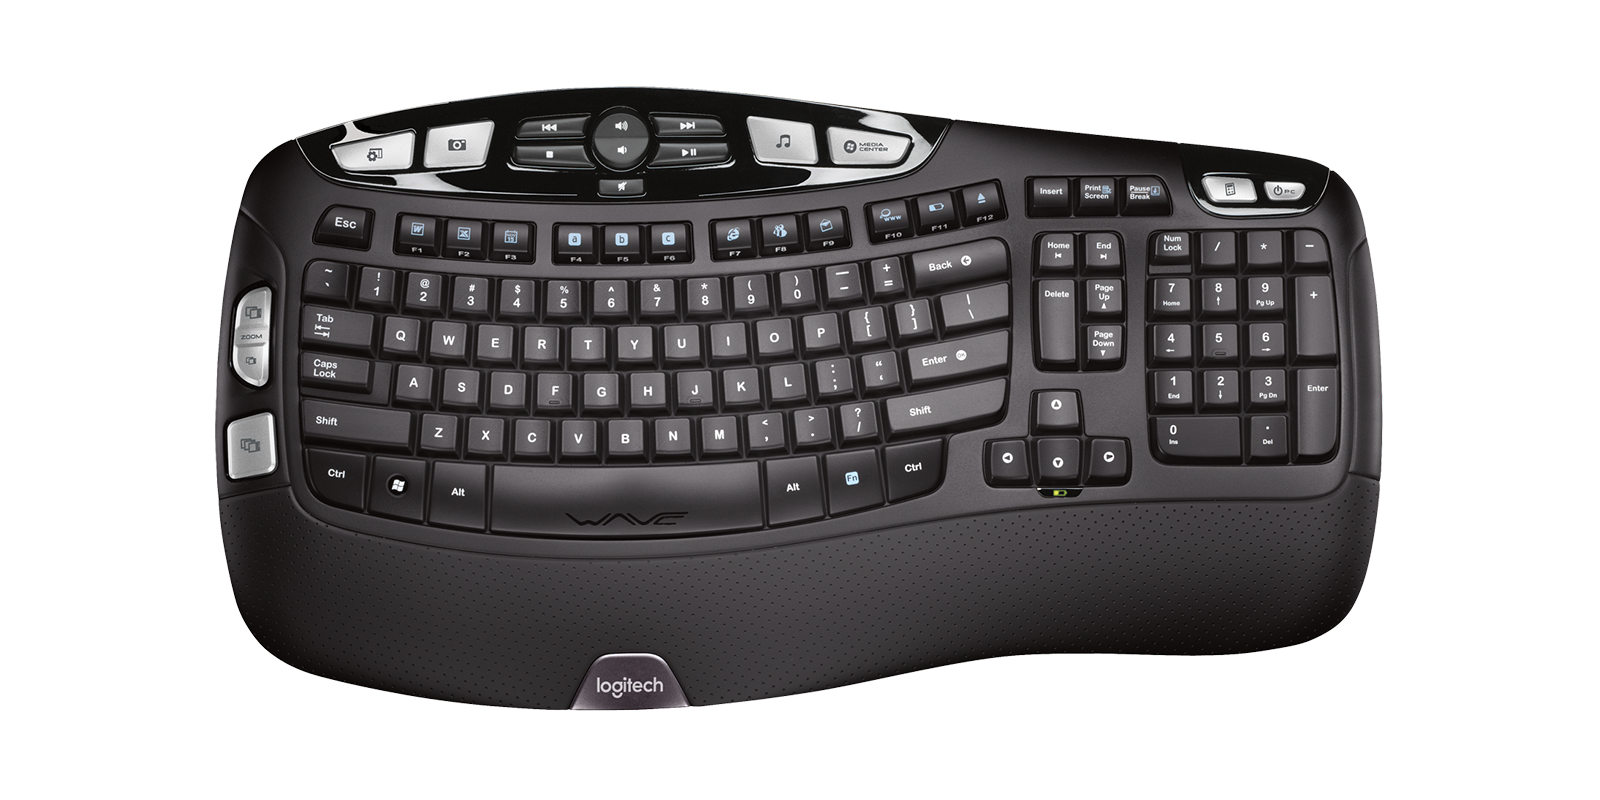 rock Marte Desempacando Logitech K350 Wireless Wave Keyboard with Palm Rest